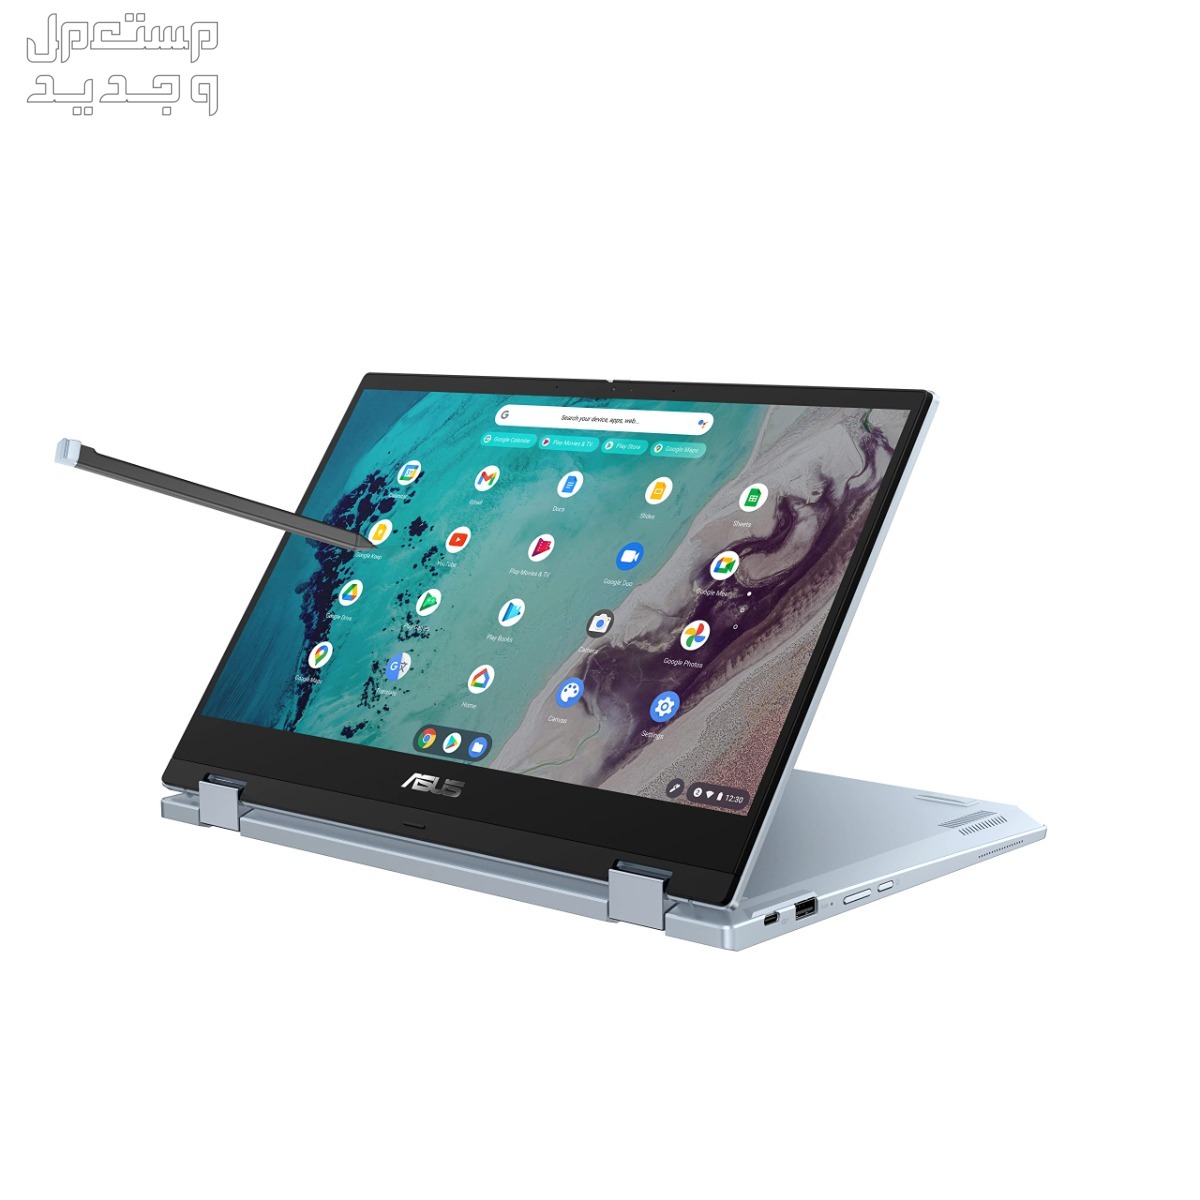 تعرف على أفضل لاب توب للبرمجة بسعر رخيص 2024 في ليبيا Asus Chromebook Flip CX3